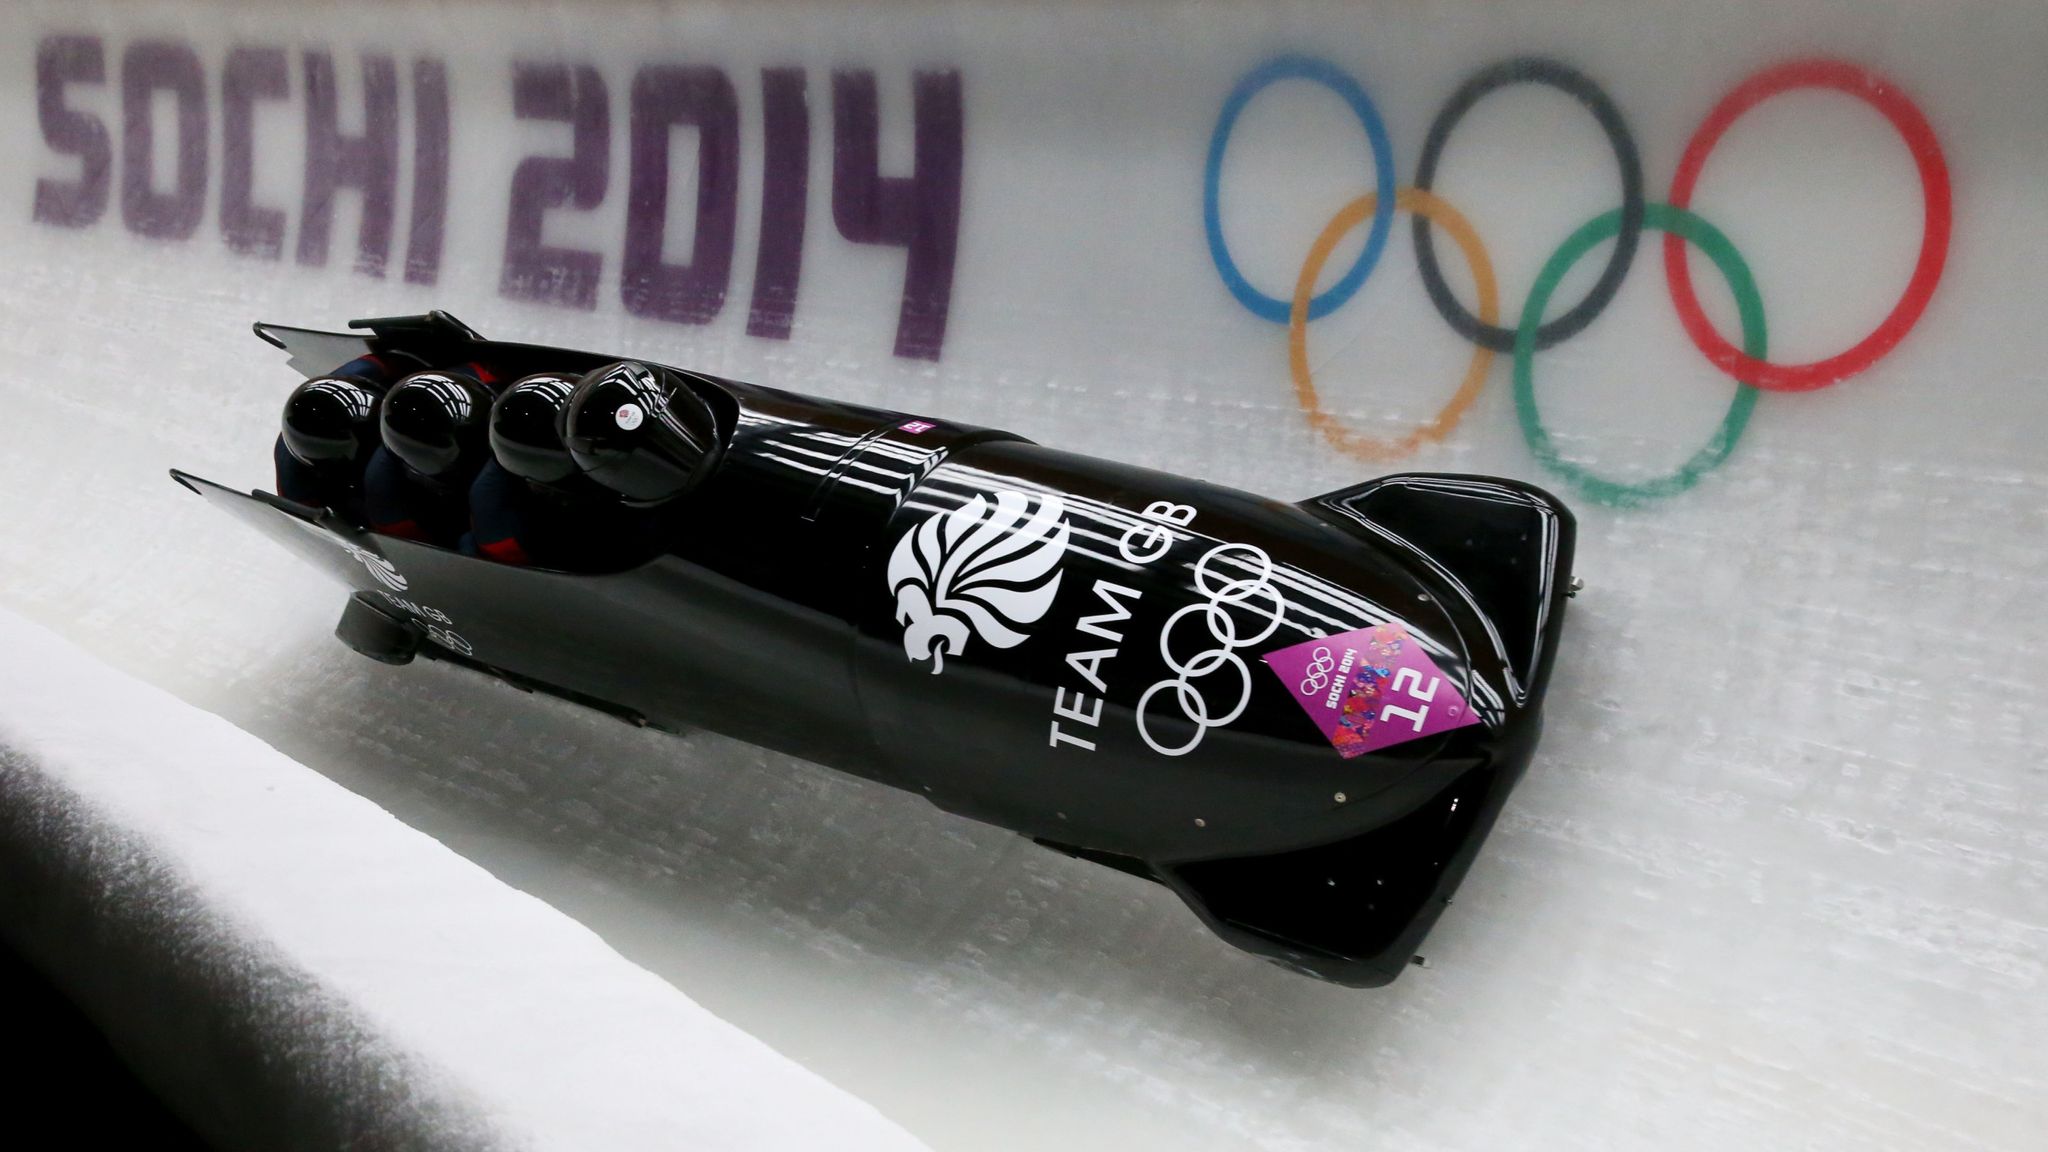 Great Britain bobsleigh team finally receive Sochi 2014 bronze medals